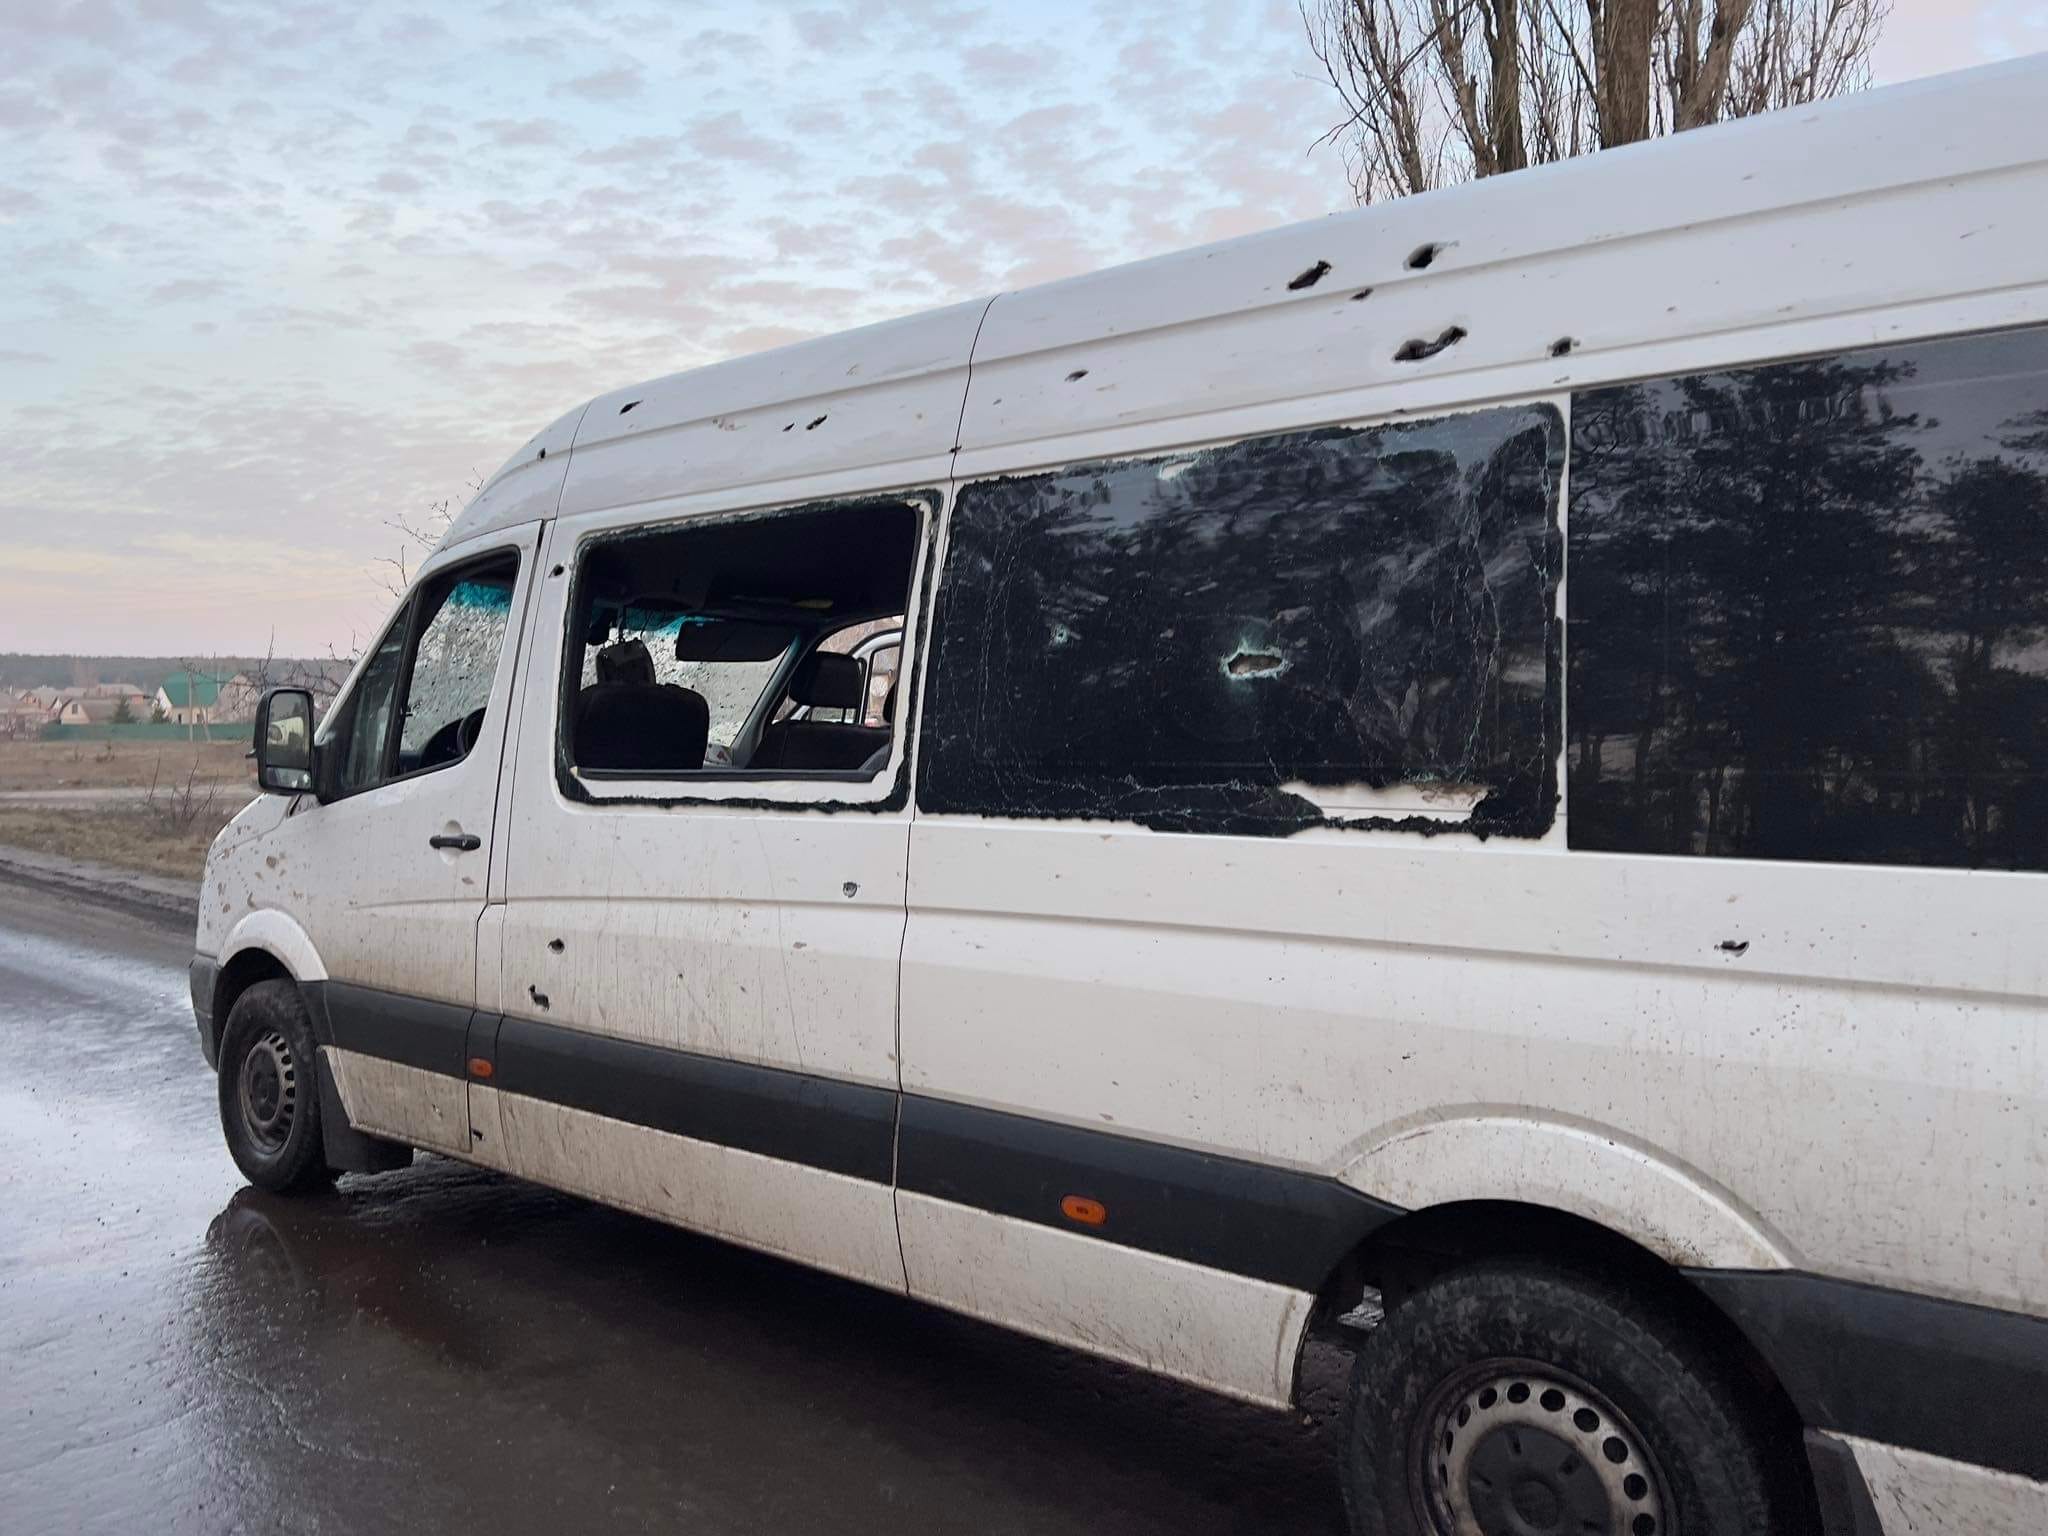 Български цивилни доброволци, пренасящи хуманитарна помощ за Украйна, са пострадали